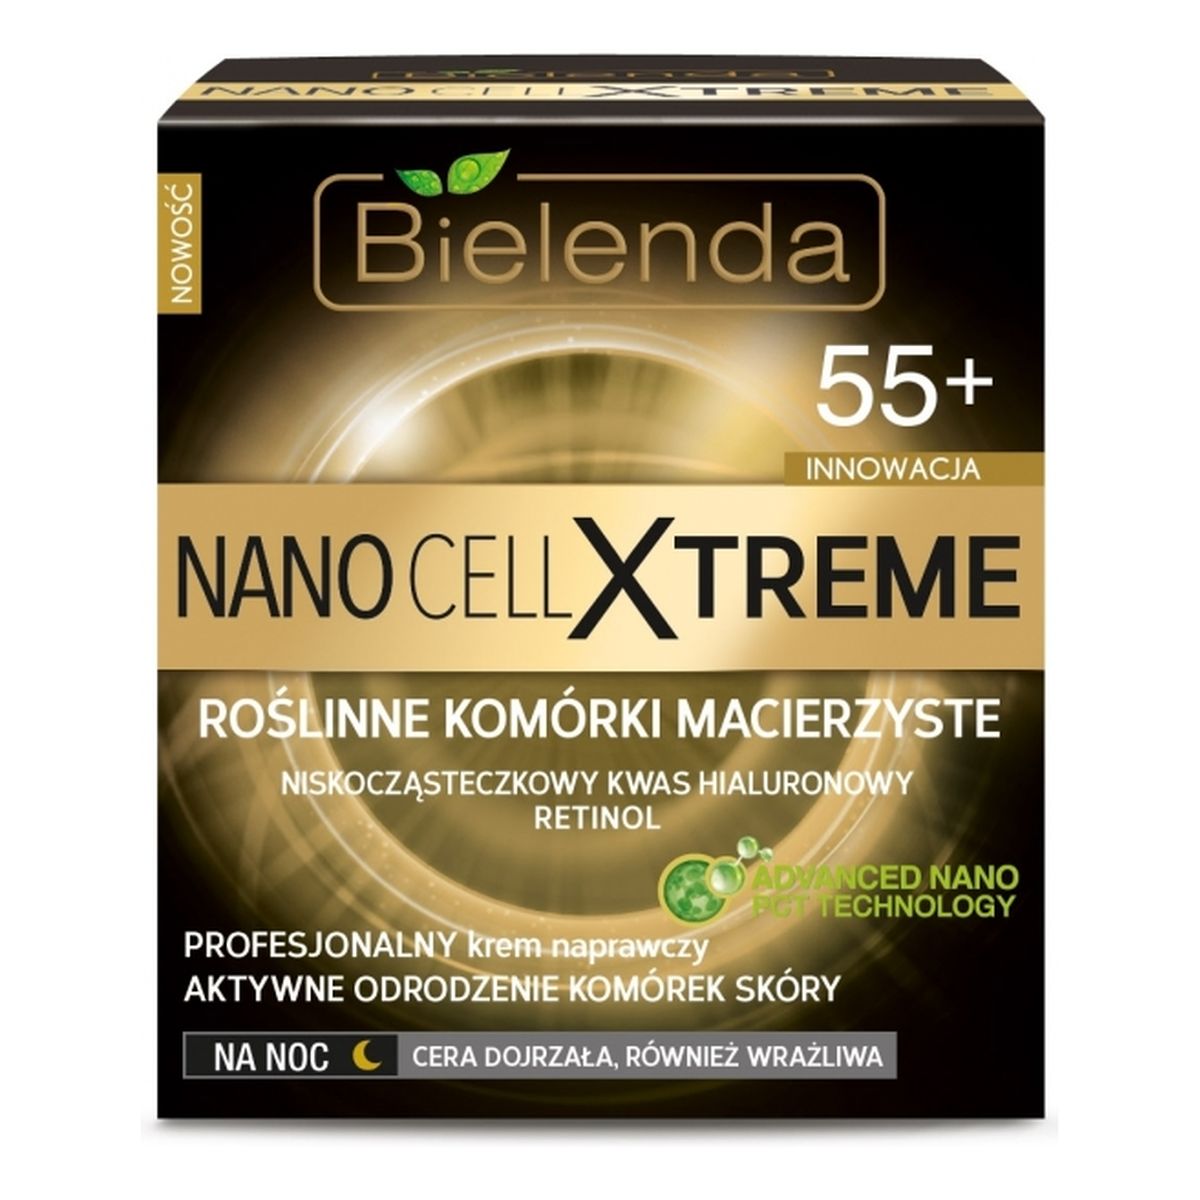 Bielenda Nano Cell Xtreme 55+ Profesjonalny Krem Naprawczy Na Noc 50ml